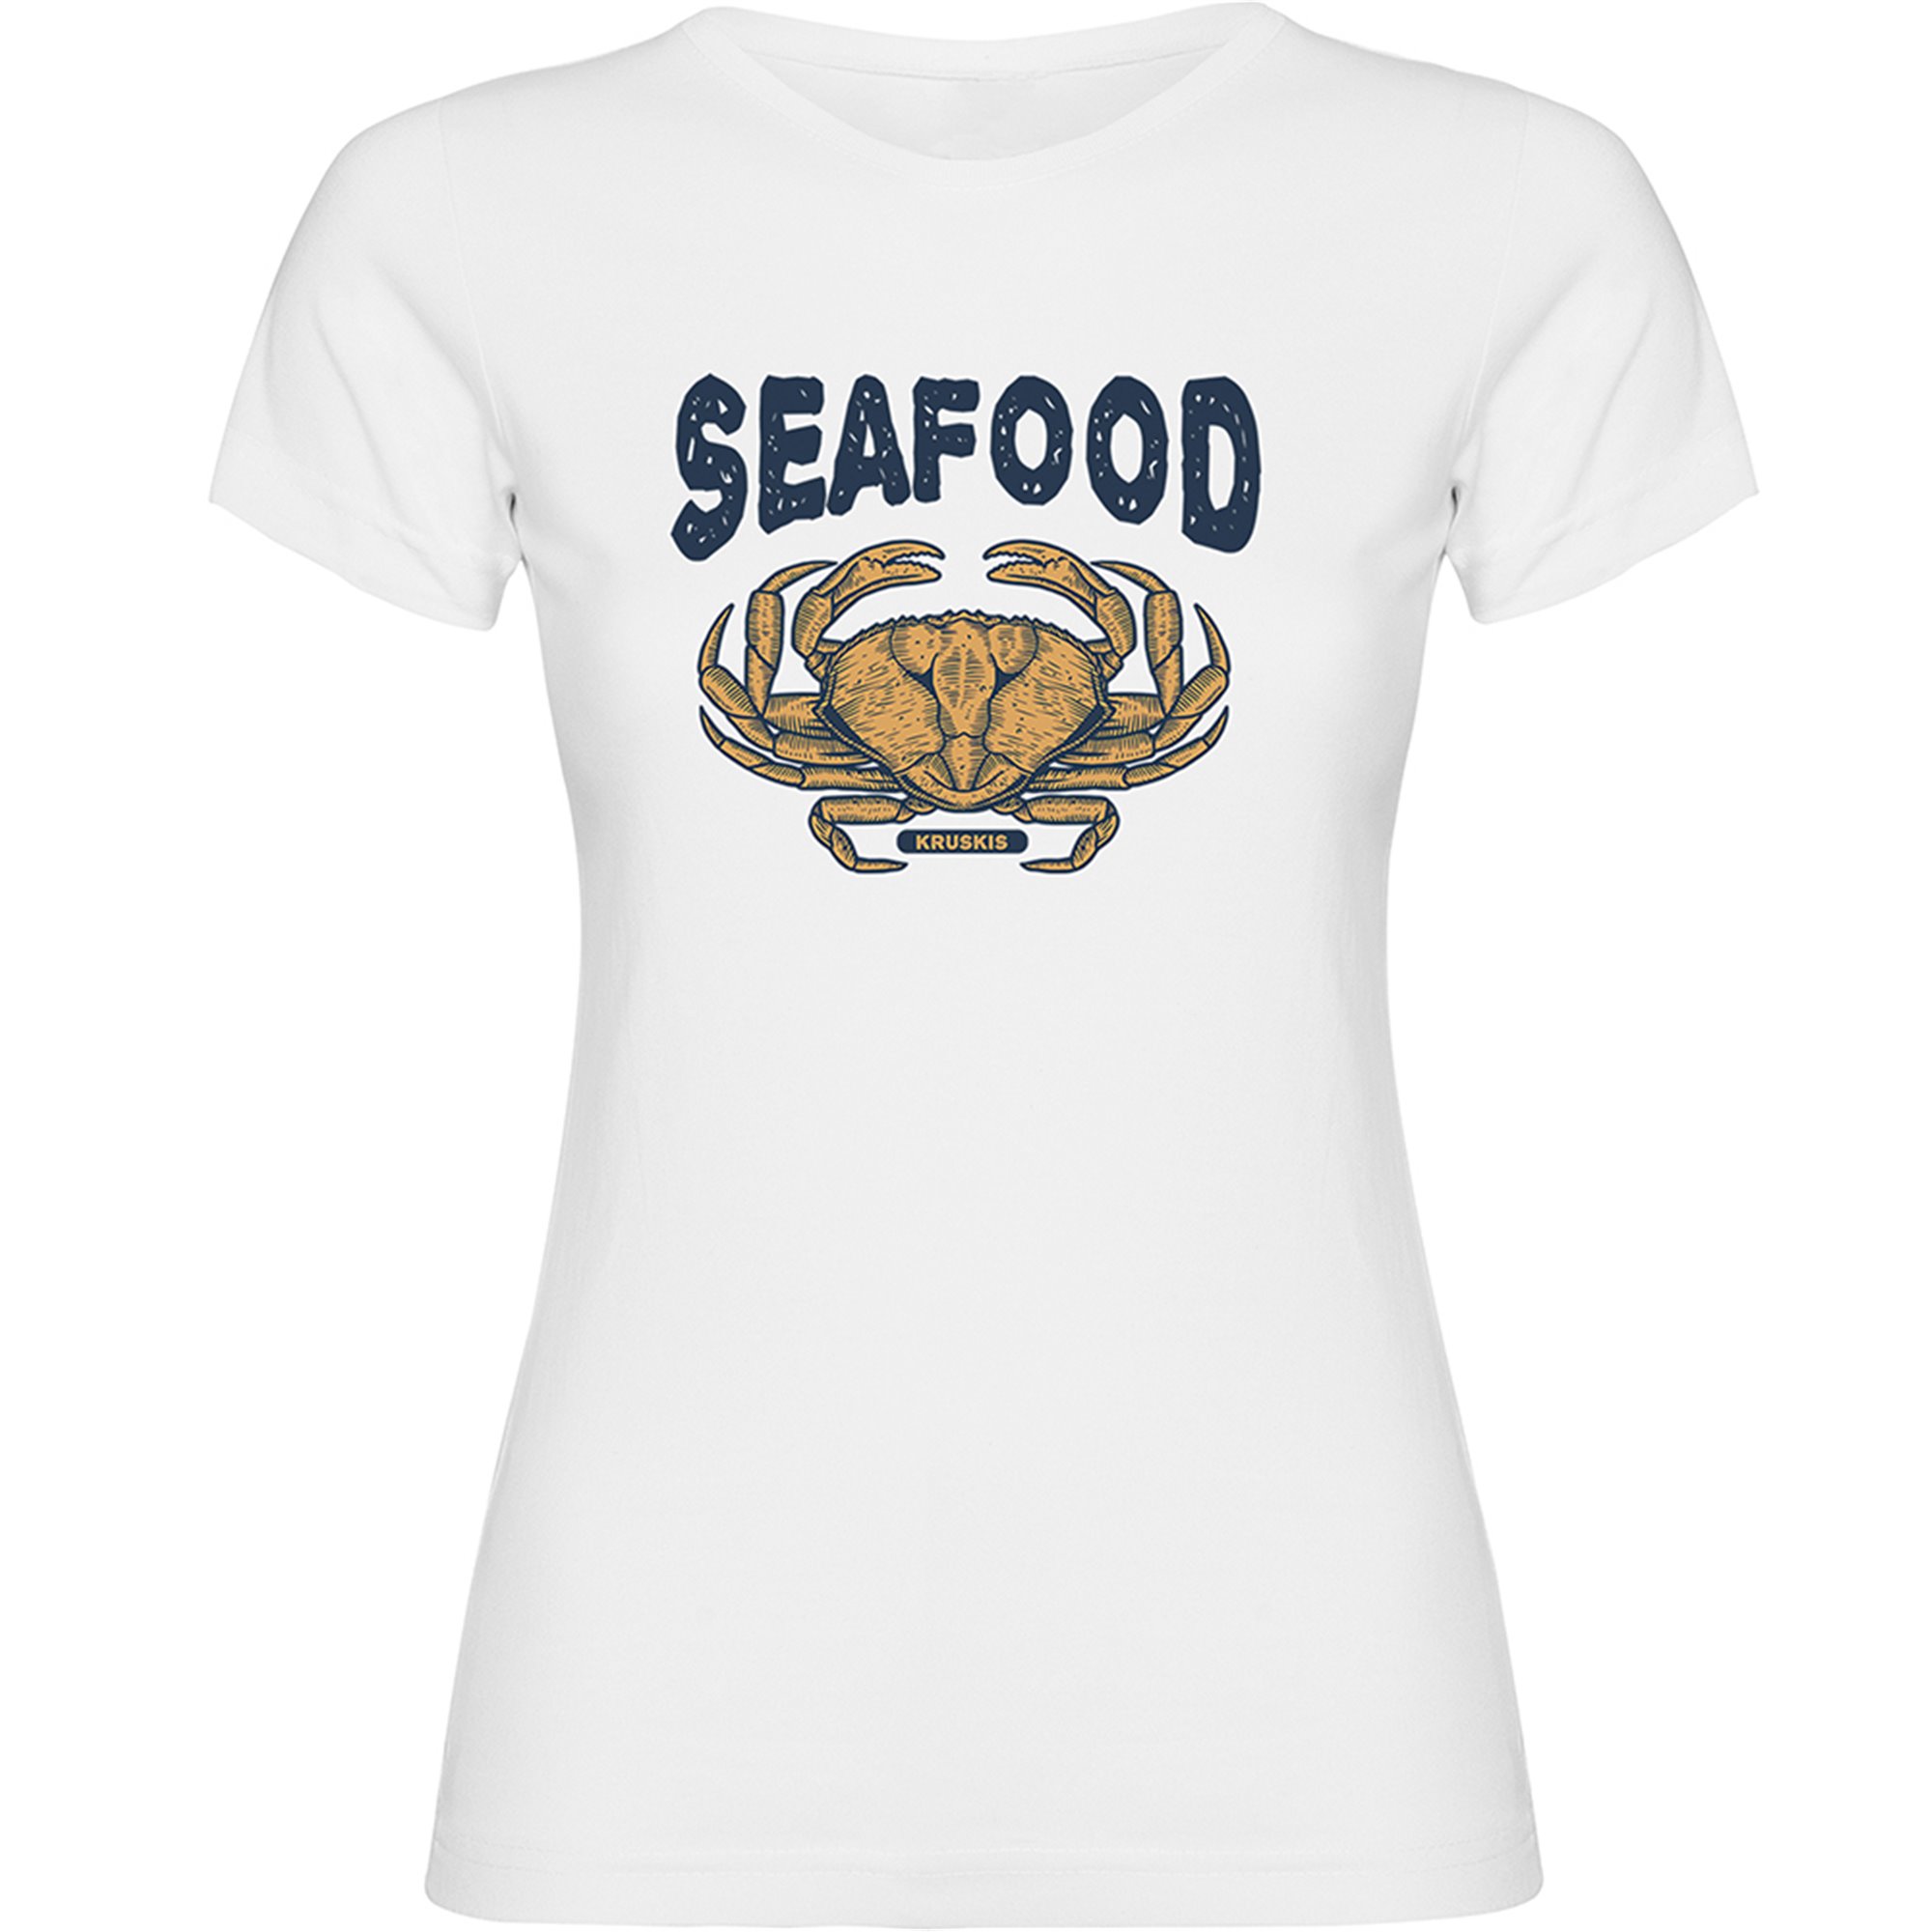 T shirt Nautical Seafood Crab Short Sleeves Woman